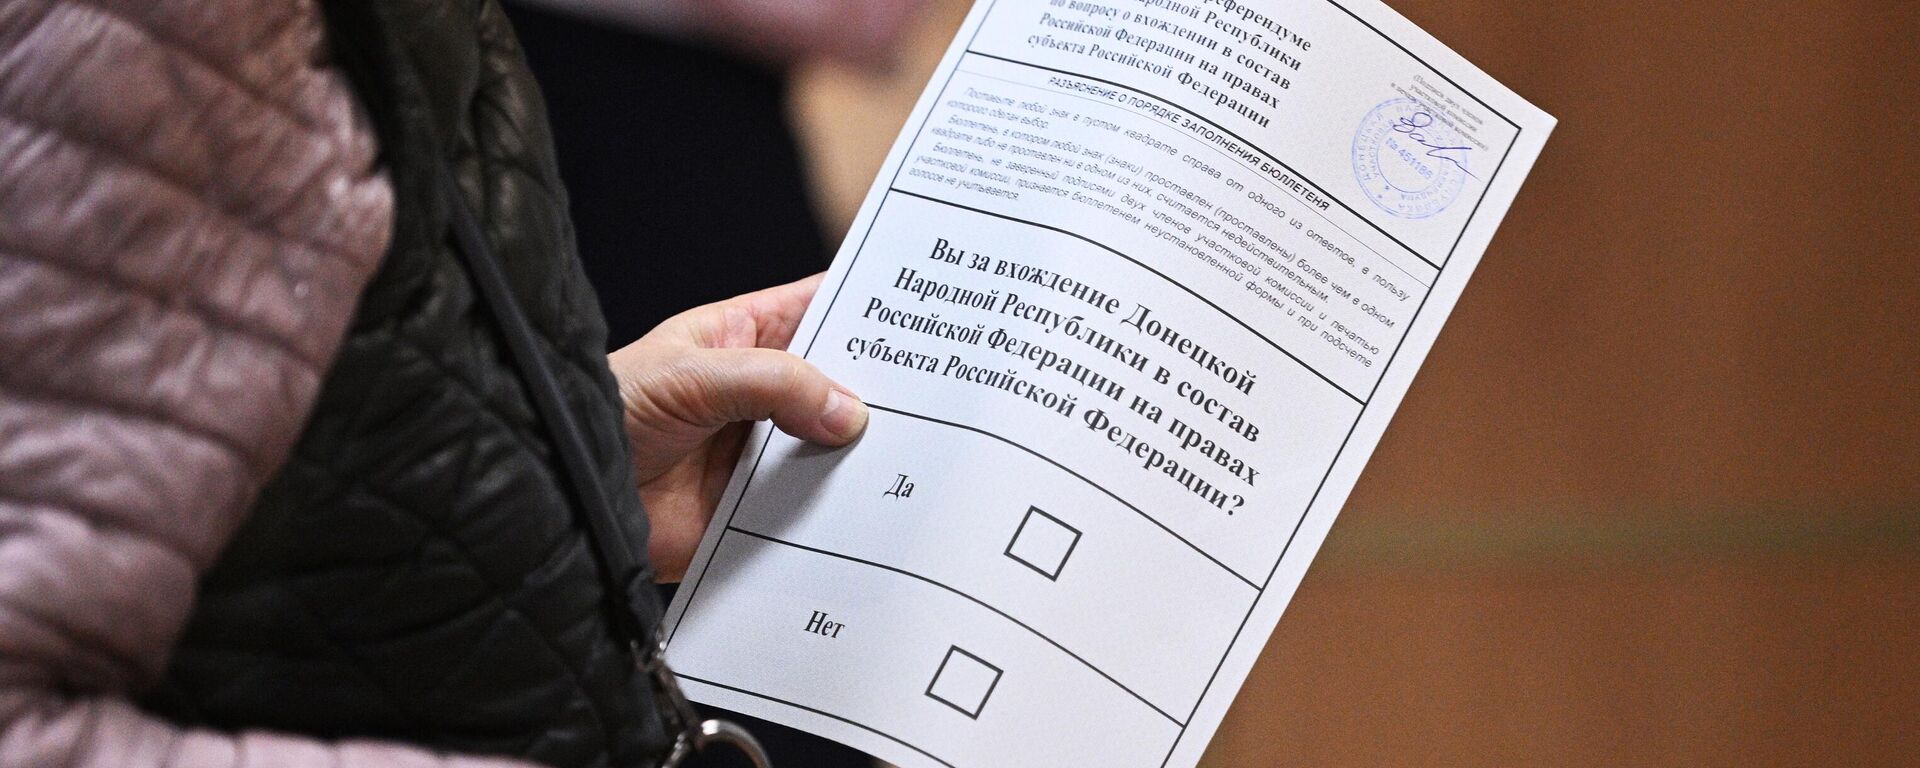 Женщина голосует на референдуме на избирательном участке в посольстве ДНР в Москве - Sputnik Латвия, 1920, 29.09.2022